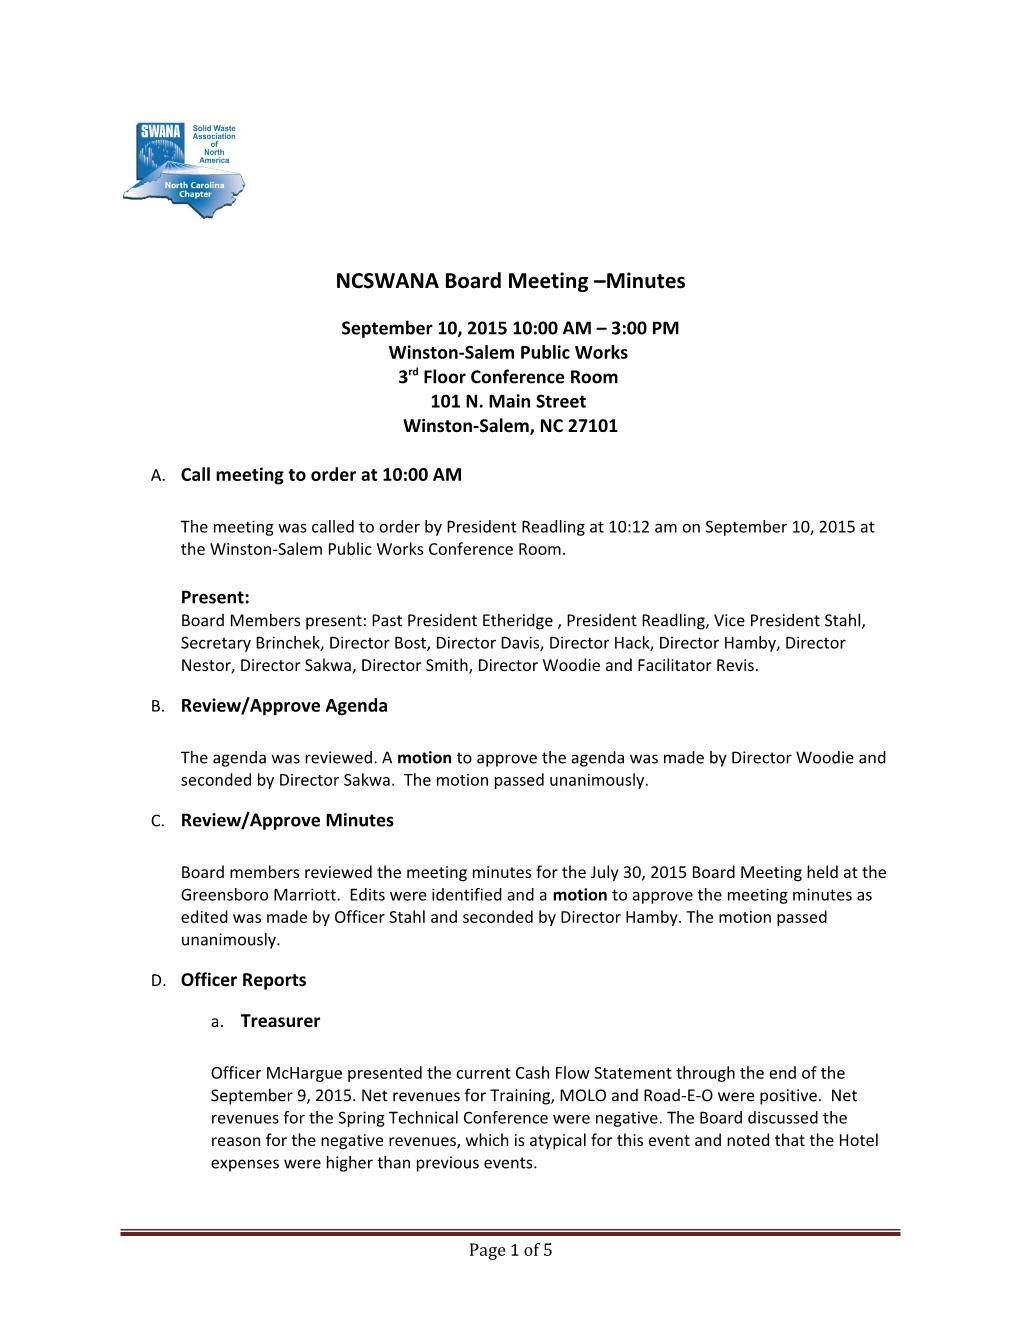 NCSWANA Board Meeting Minutes